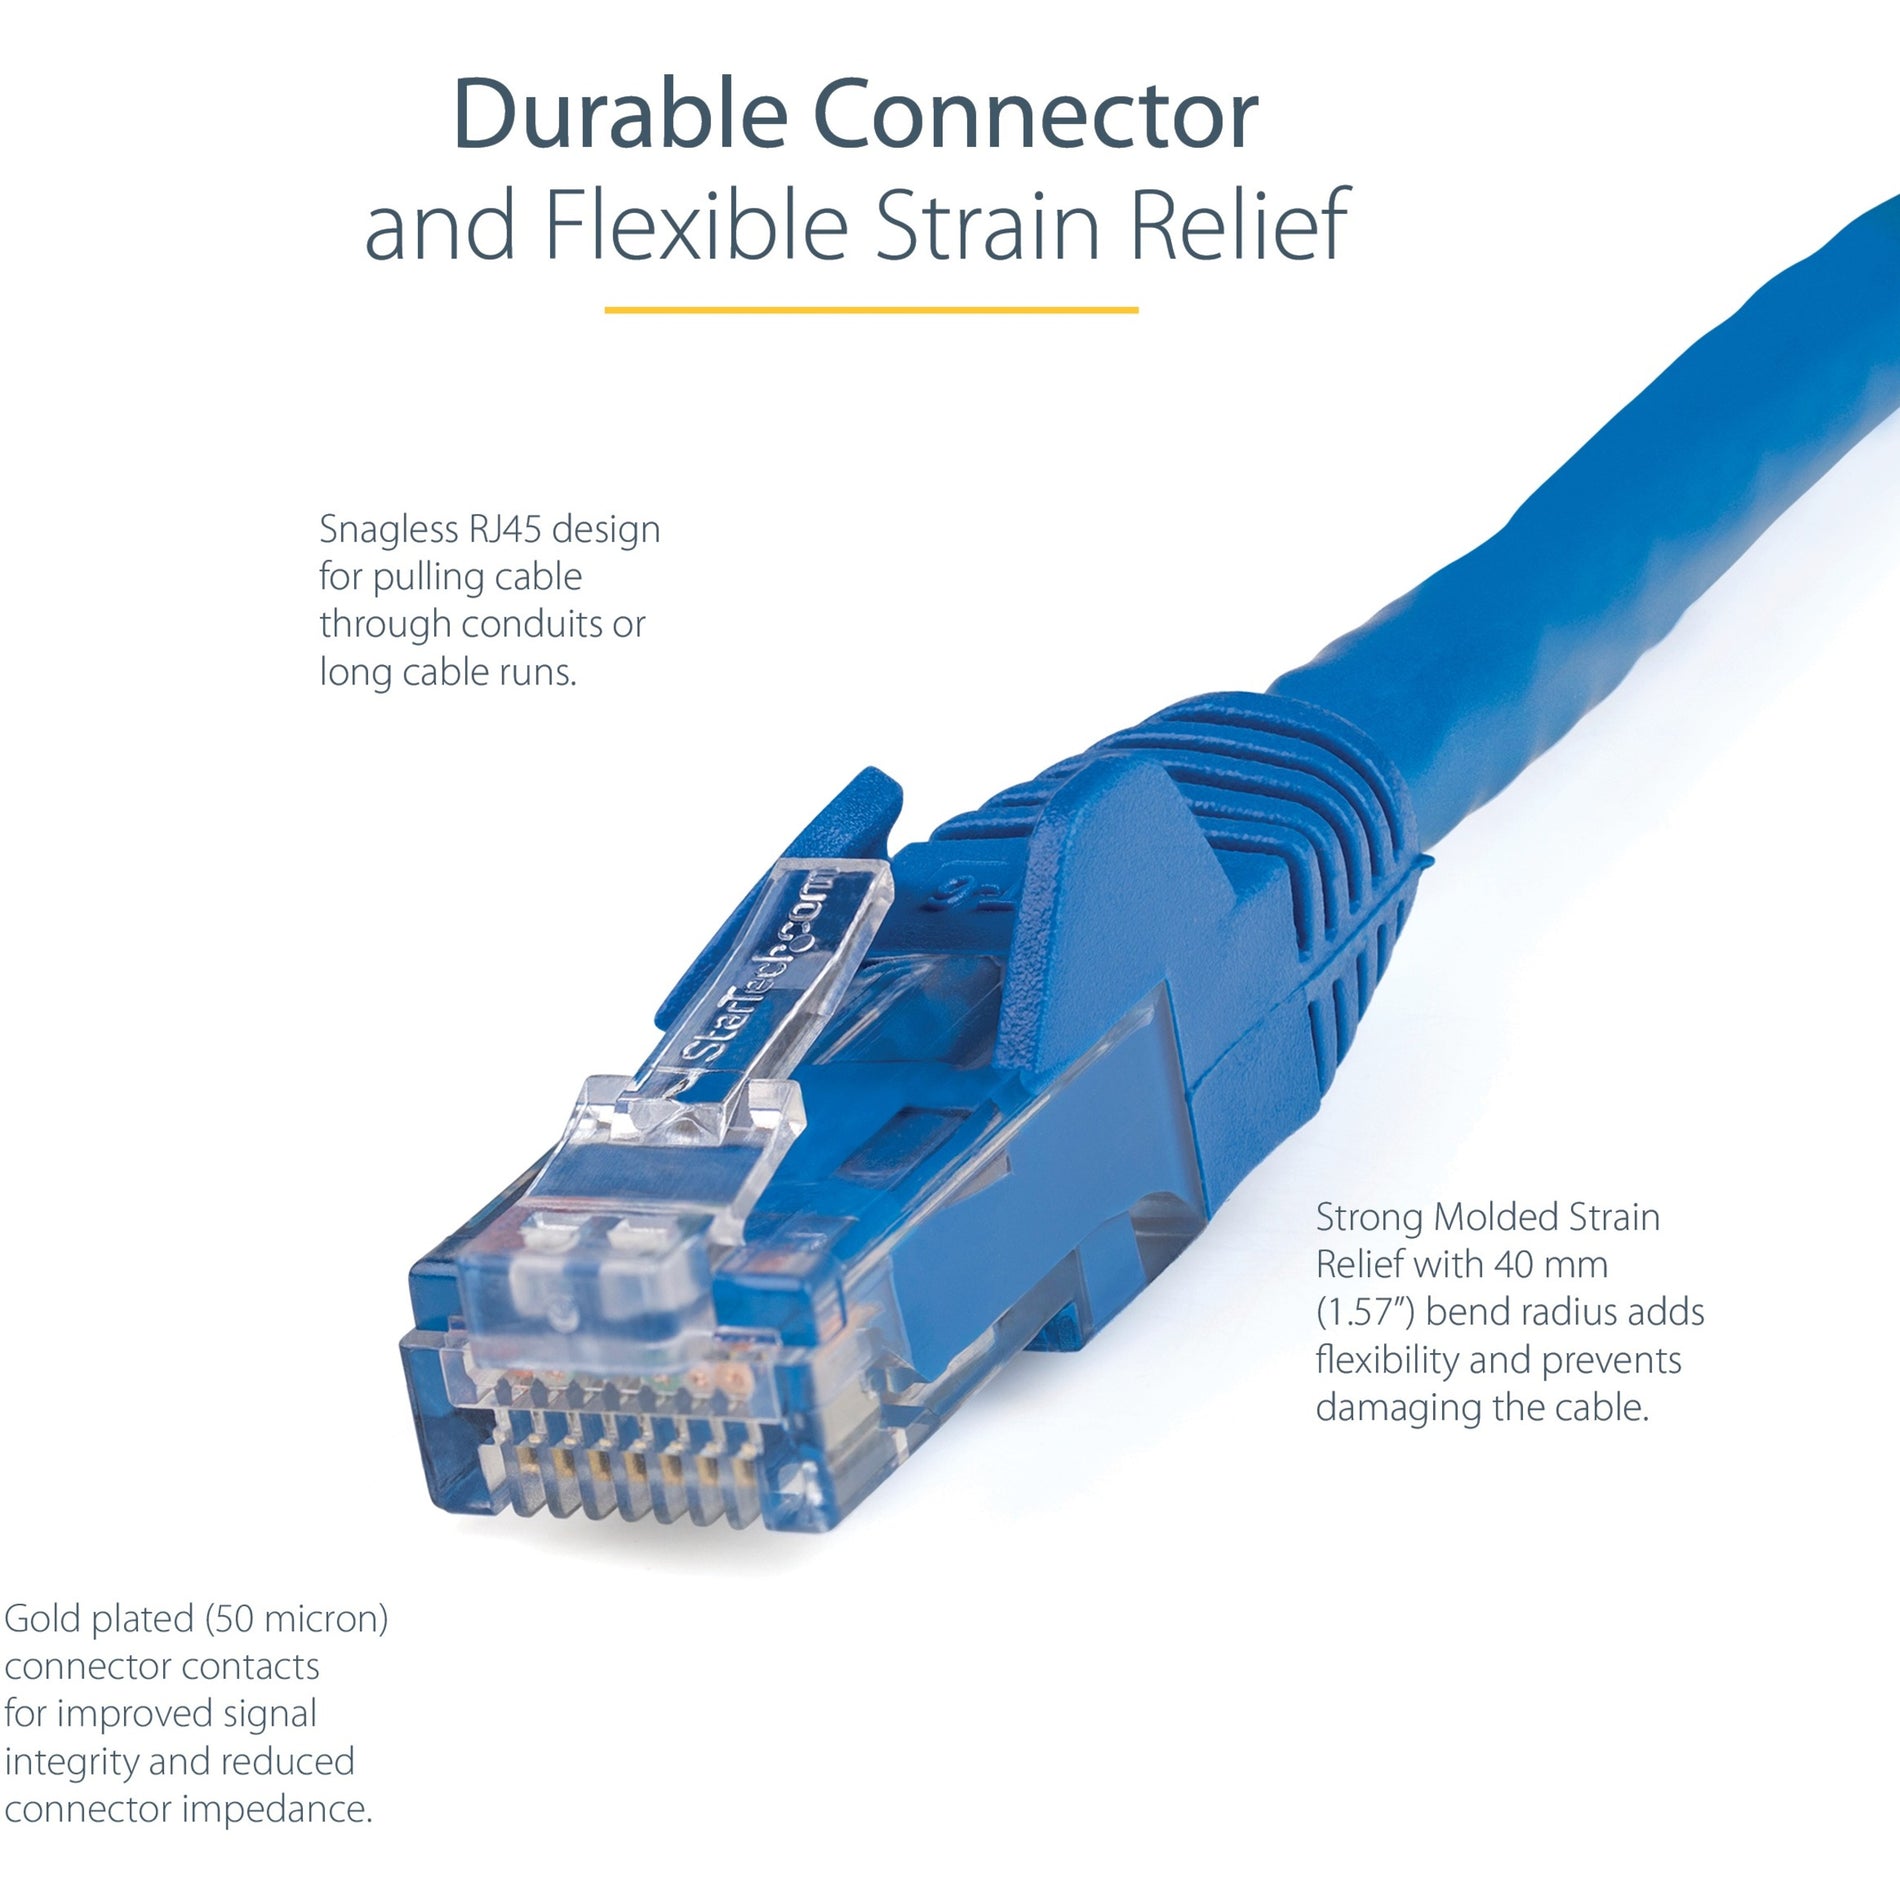 StarTech.com N6PATCH150BL Cat6 Patch Cable, 150ft Blue Ethernet Cable - Long, Snagless RJ45 Connectors